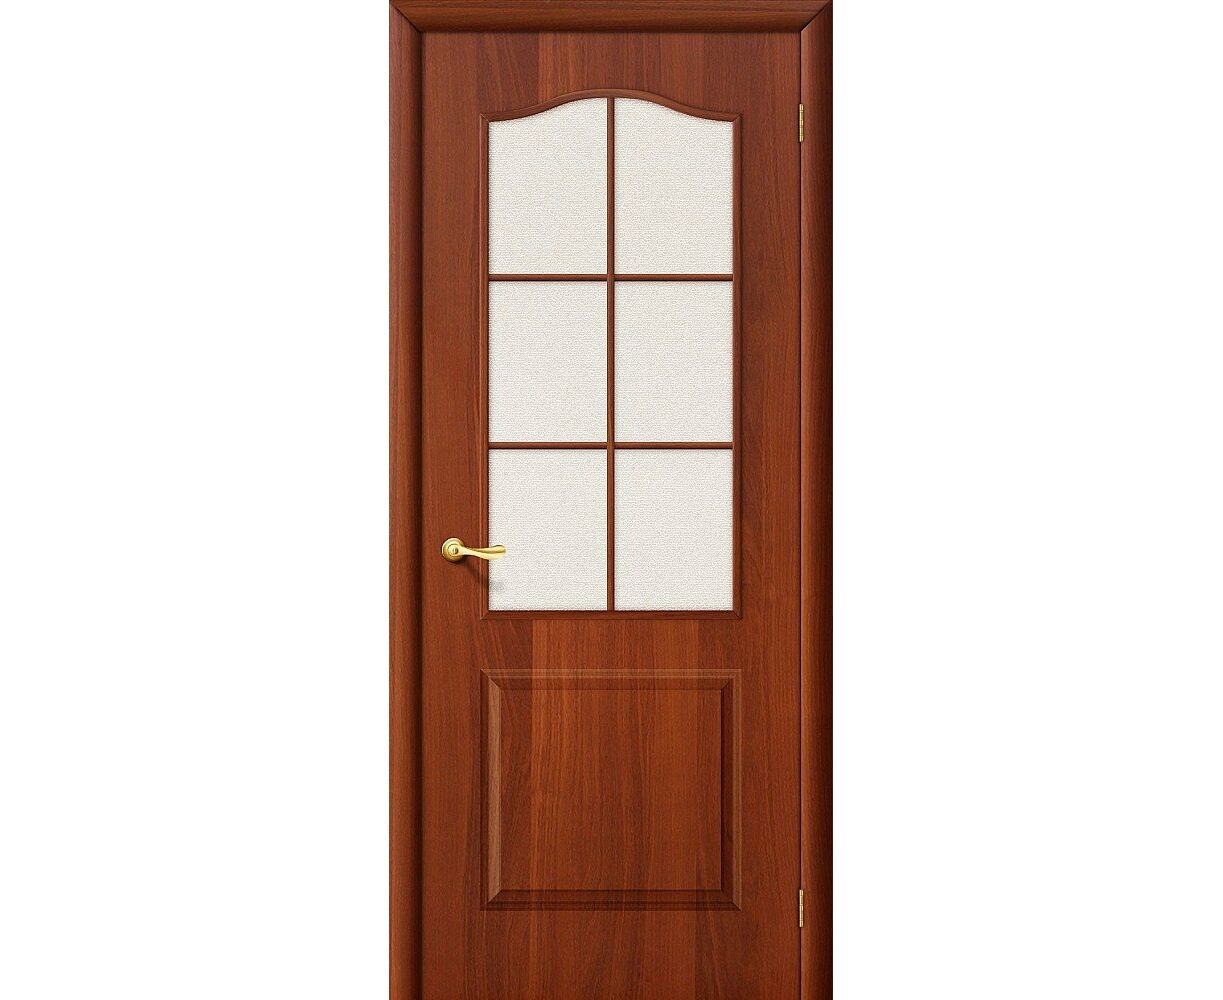 Купить двери межкомнатные в великом. Дверь Браво Симпл 13. М7 т-06 (темный лак)(200*60). Браво межкомнатная дверь из массива м7 светлый лак.